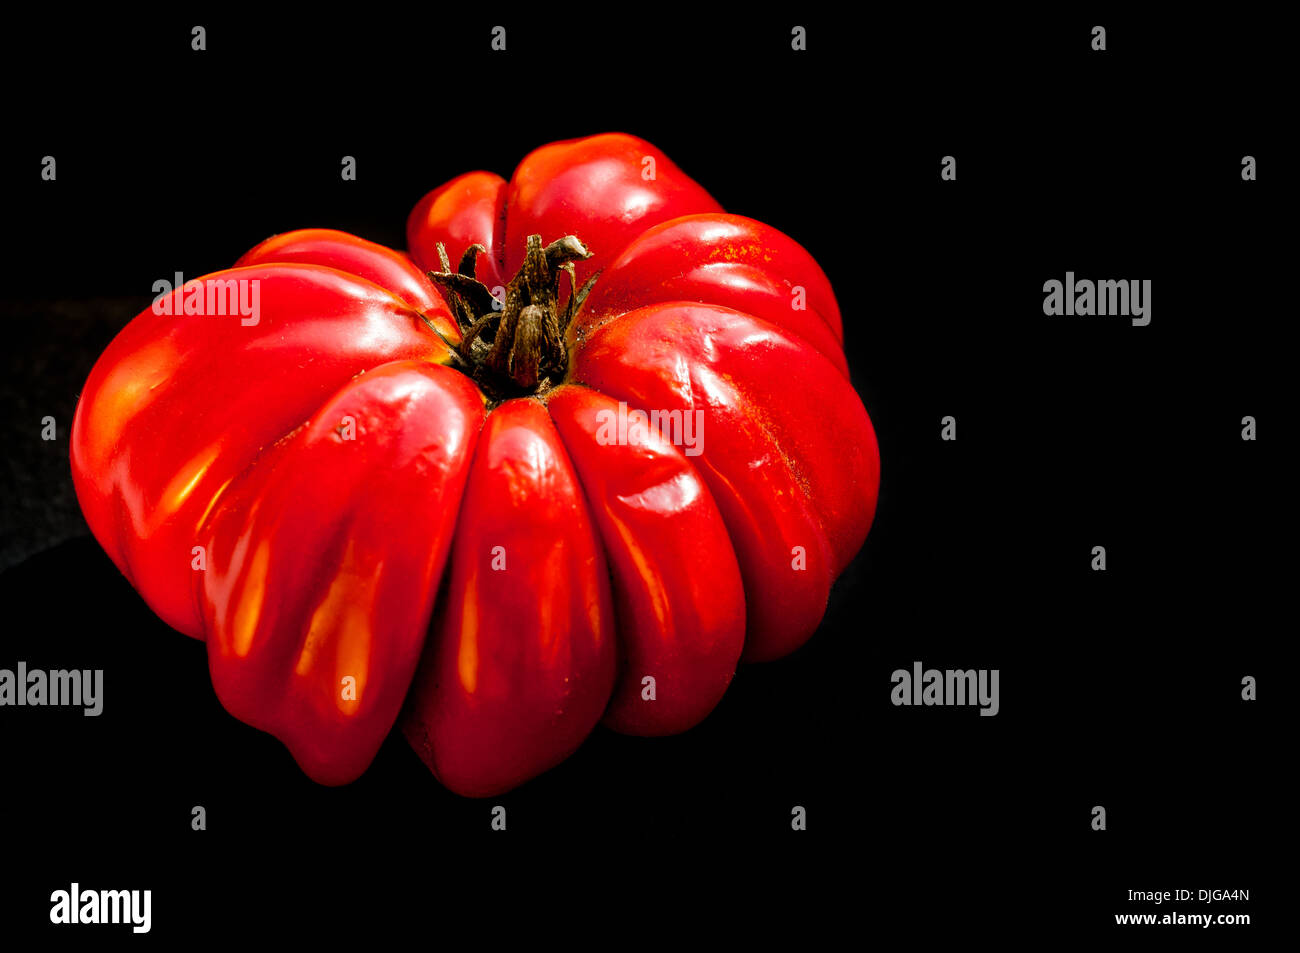 Grande y corazón de res tomate rojo sobre fondo negro Foto de stock